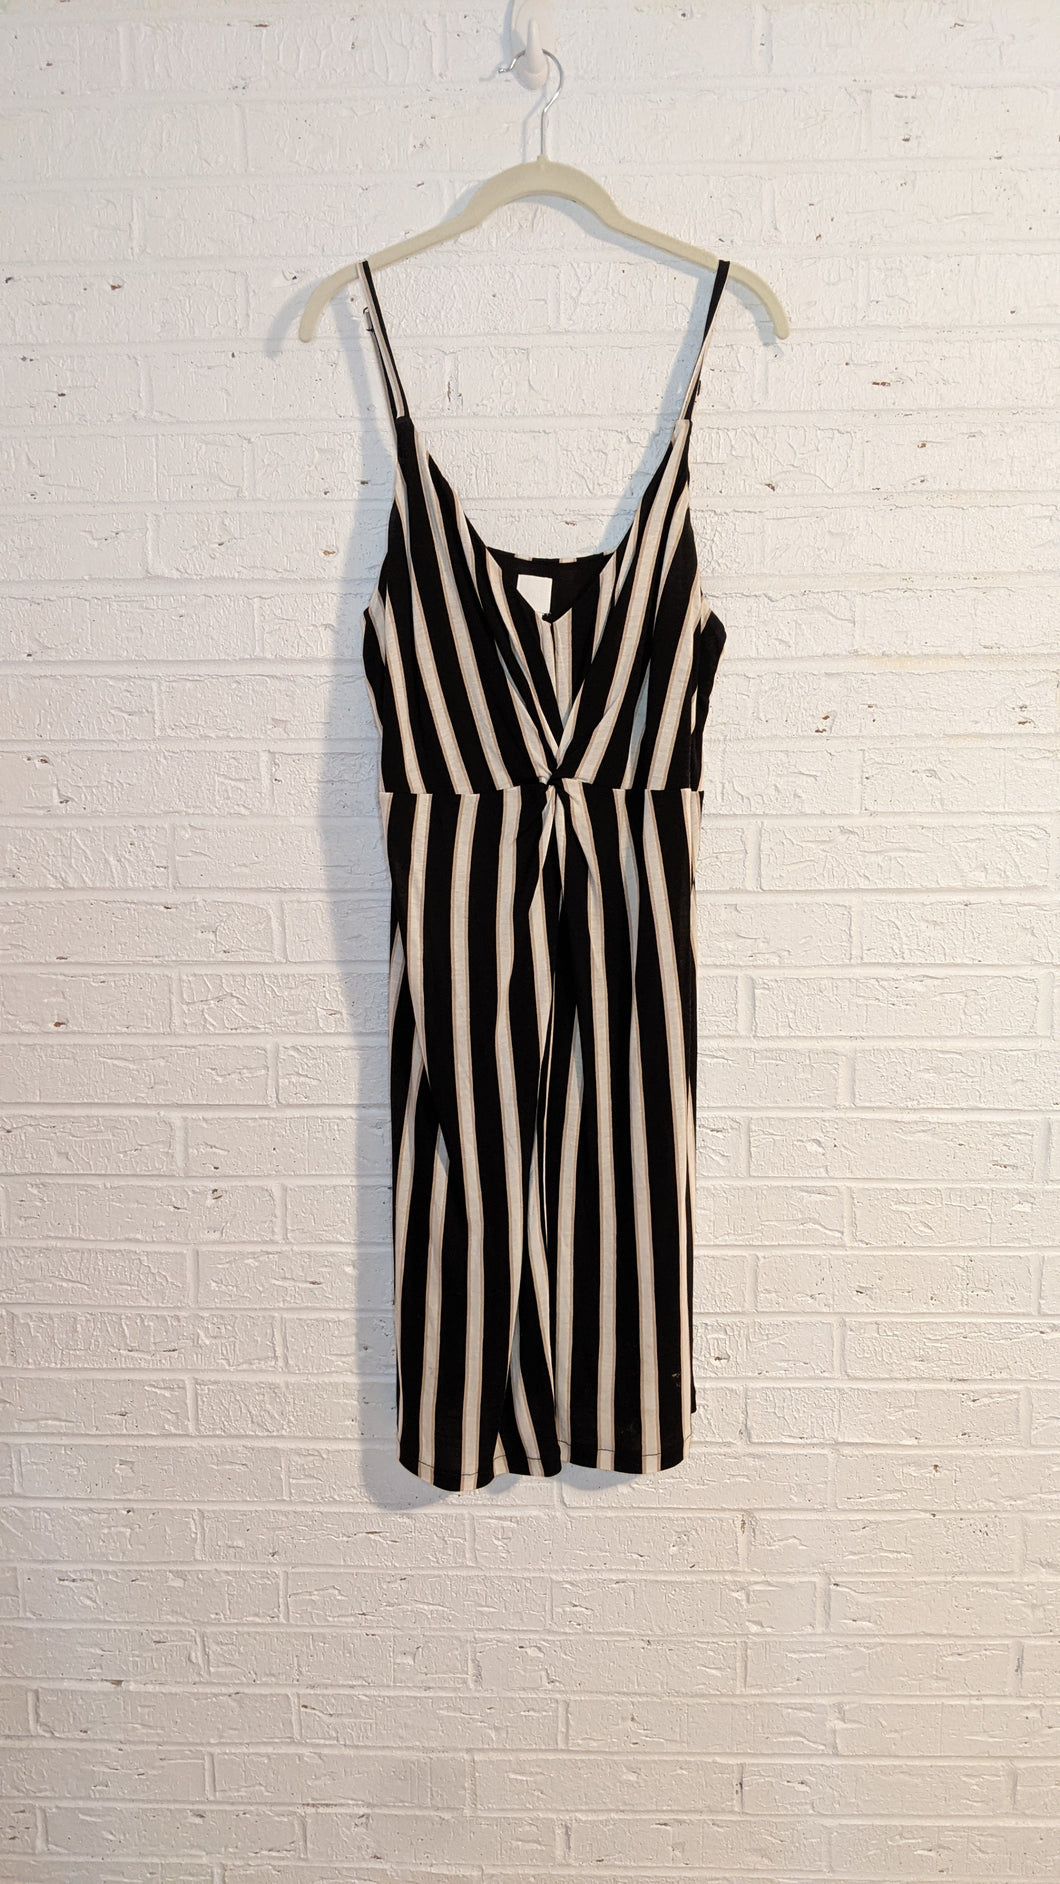 XL - H&M striped dress